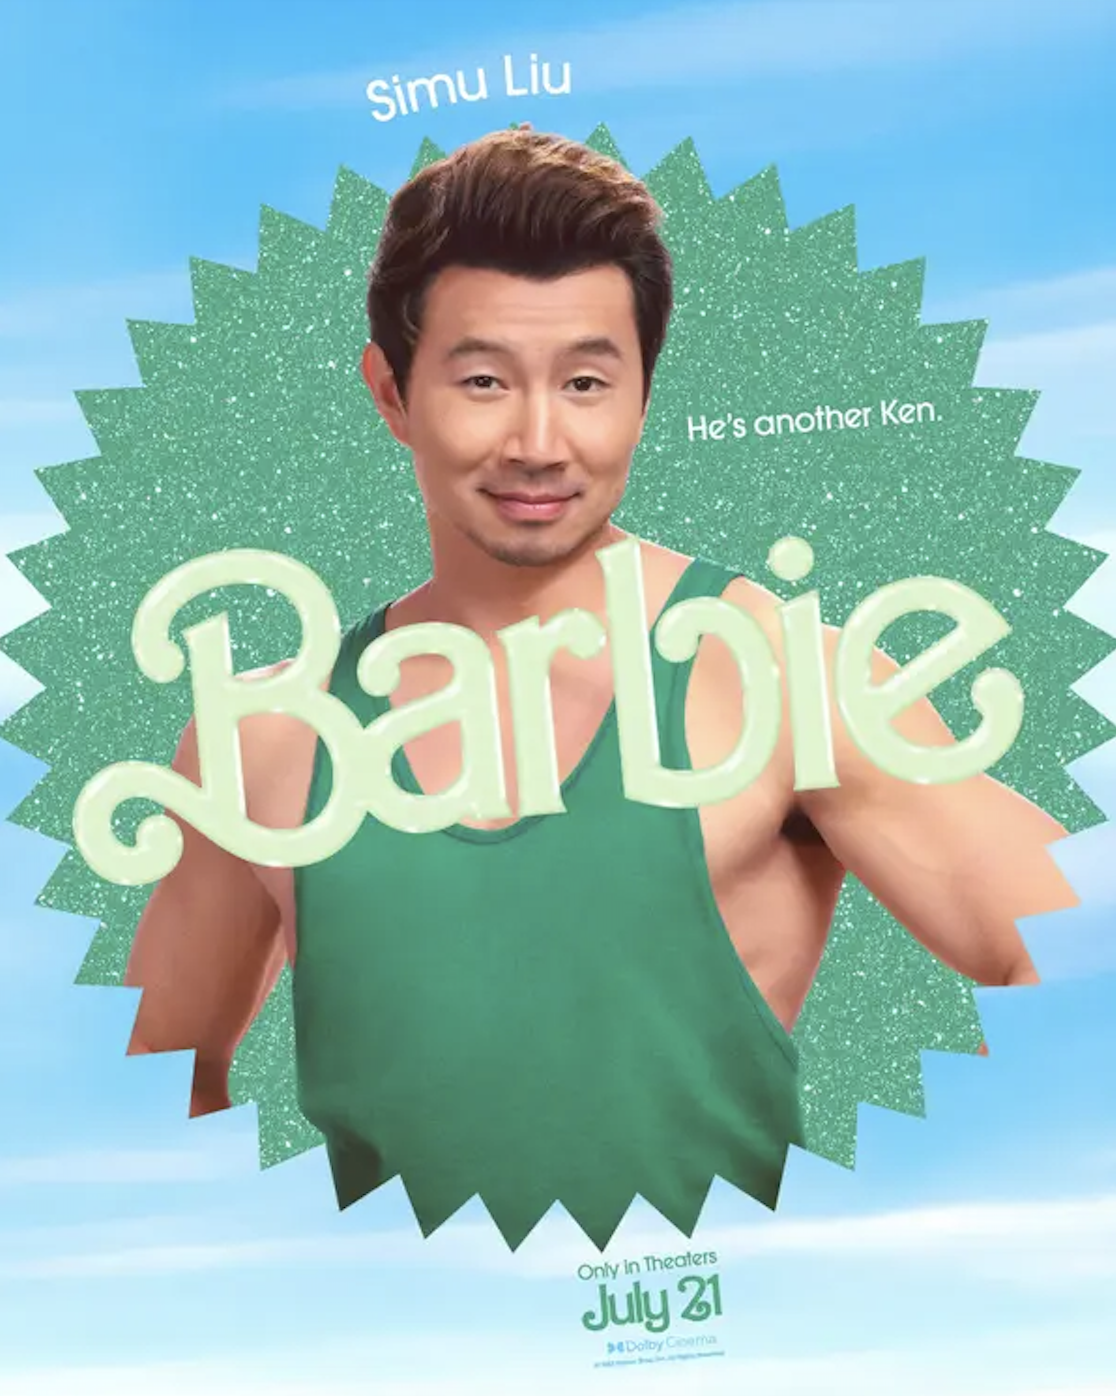 Simu Liu in the Barbie movie poster